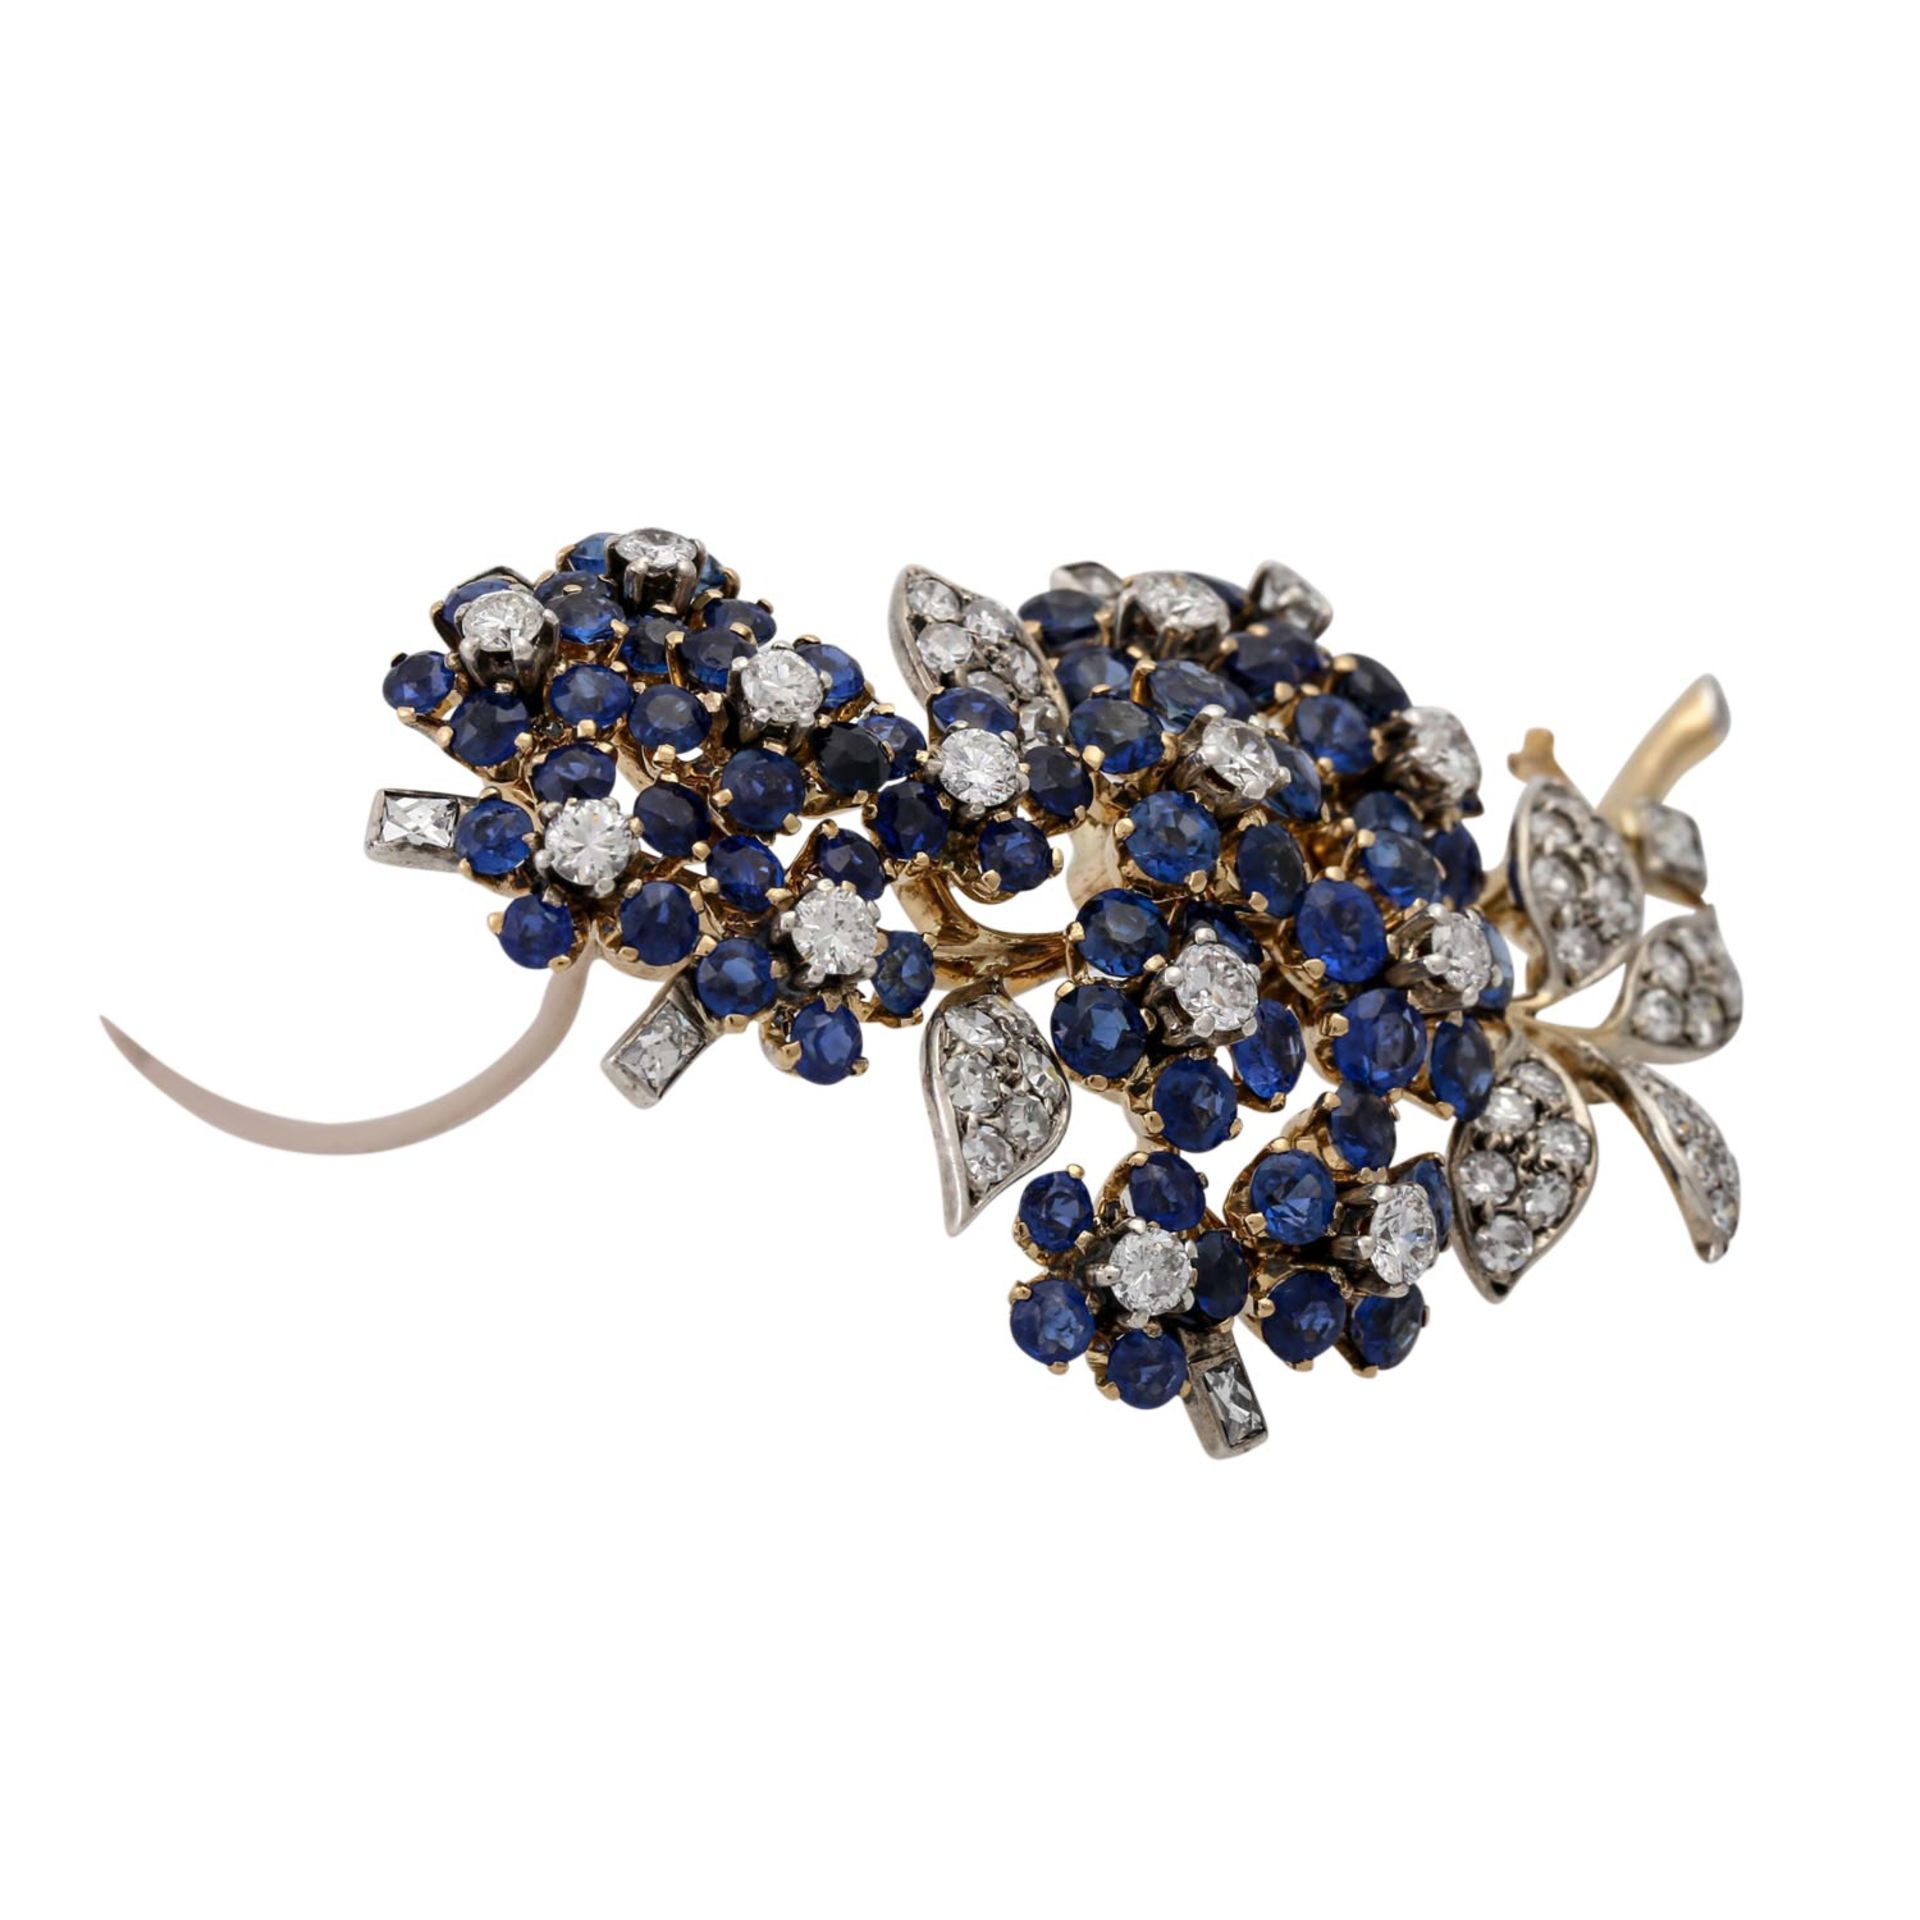 Feine Juwelenbrosche mit Saphiren und Diamanten,WBW (2013): 20.300 €, detailreiche B - Image 2 of 5